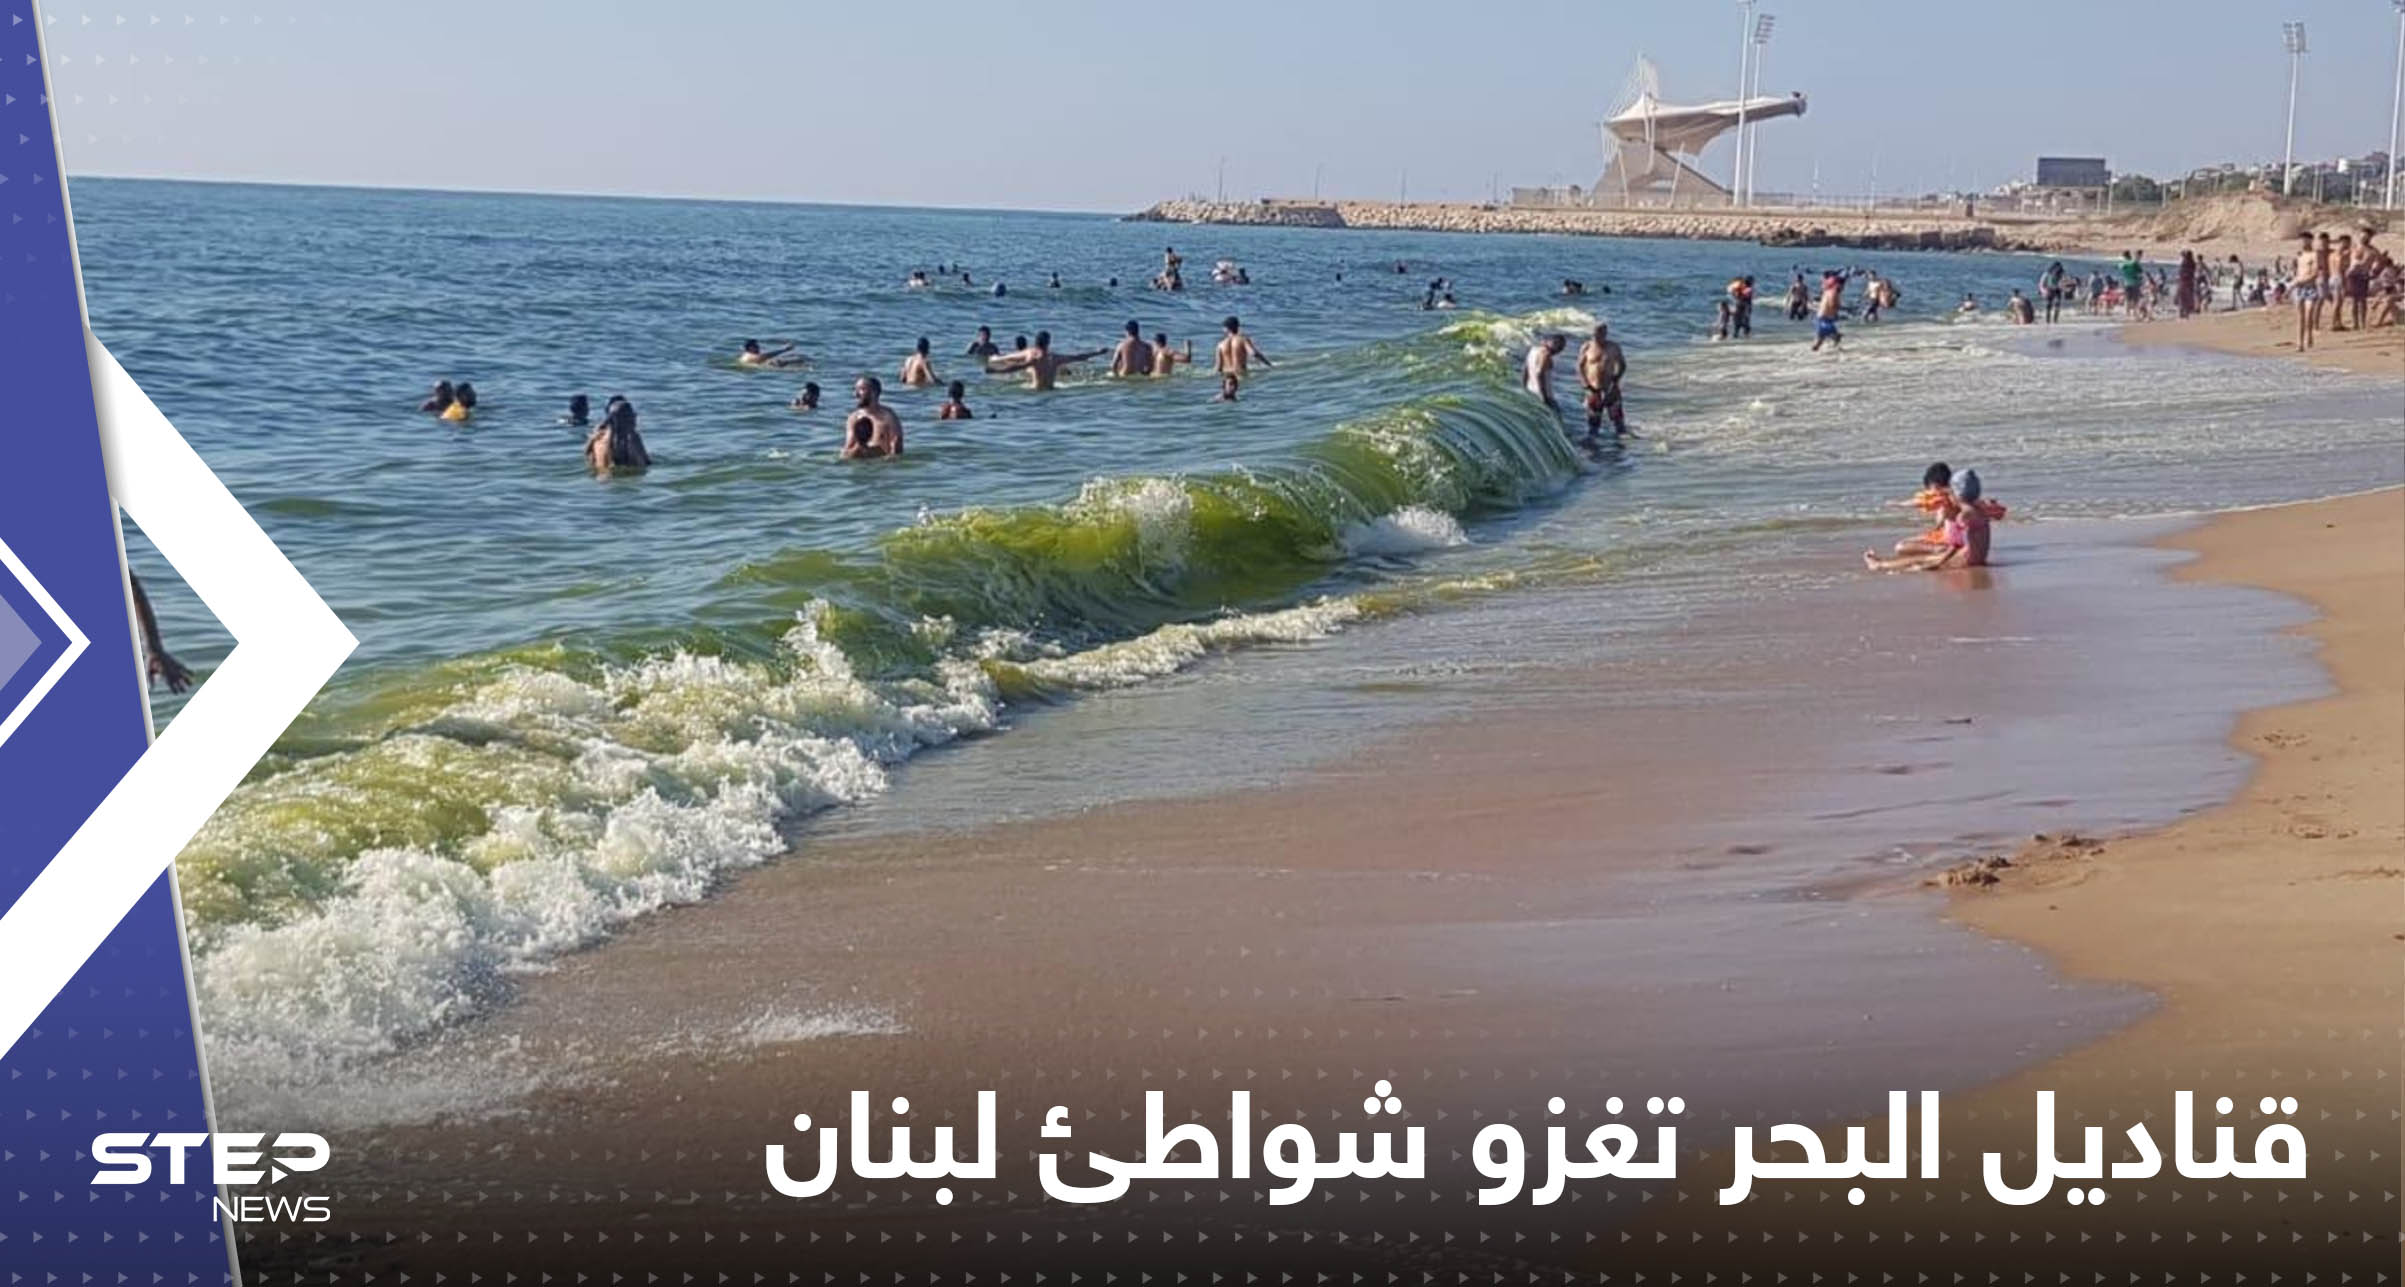 "الغزو الأبيض" يصل شواطئ لبنان.. فيديو أثار القلق